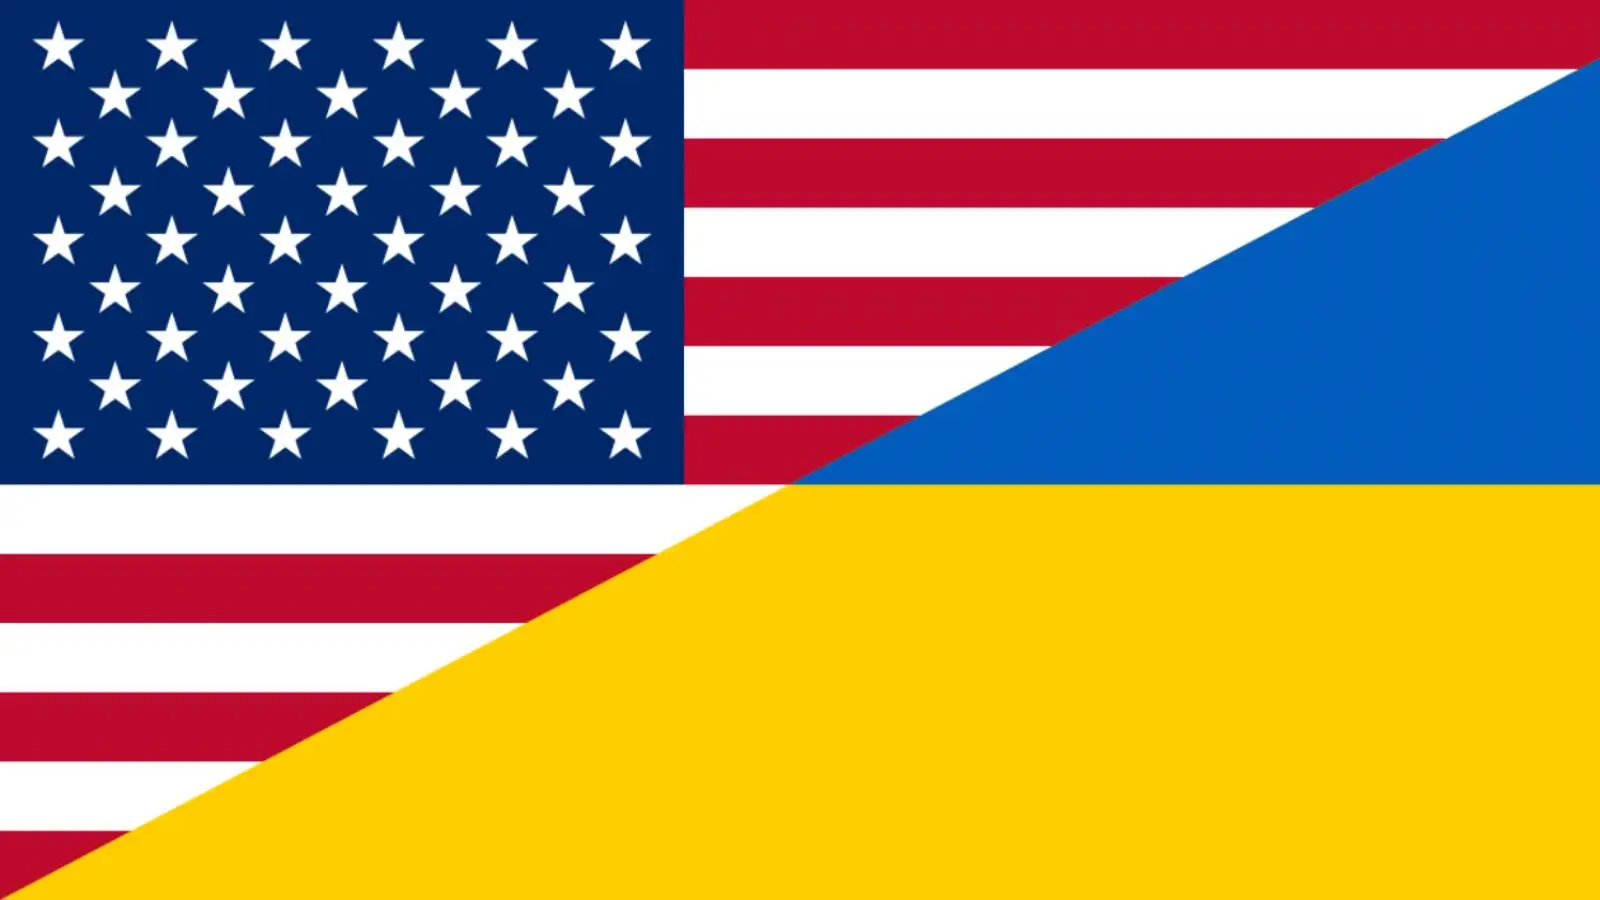 Gli Stati Uniti sono rimasti sorpresi dalla decisione dell'Ucraina di chiedere l'adesione alla NATO